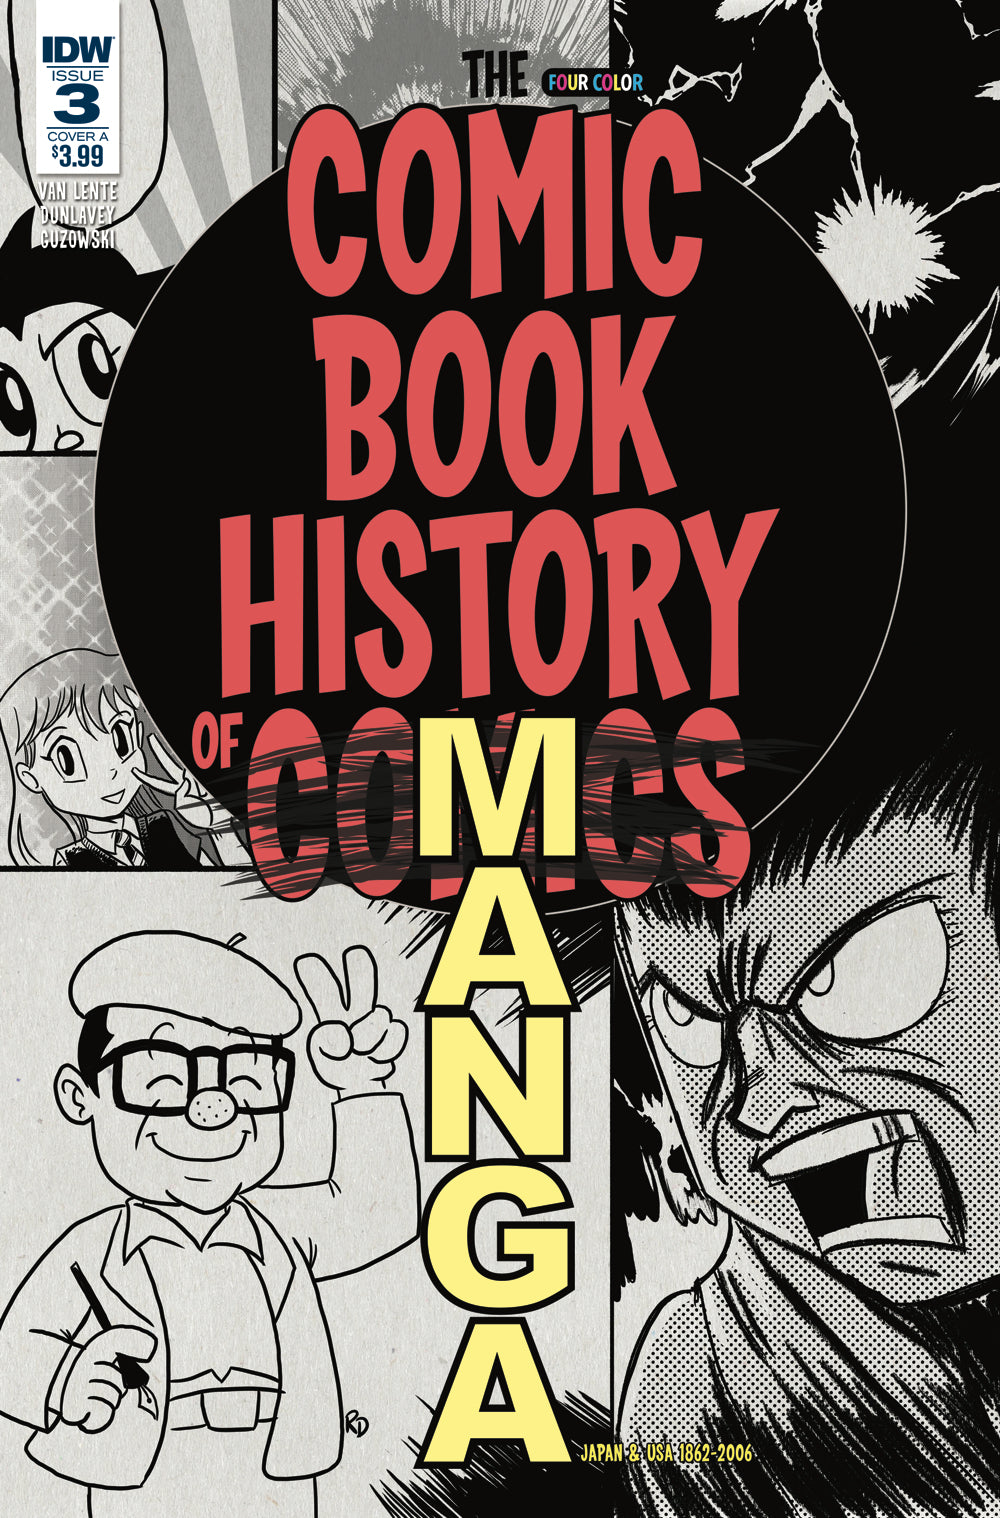 COMIC BOOK HISTORY OF COMICS COMICS FOR ALL #3 CVR A COVER